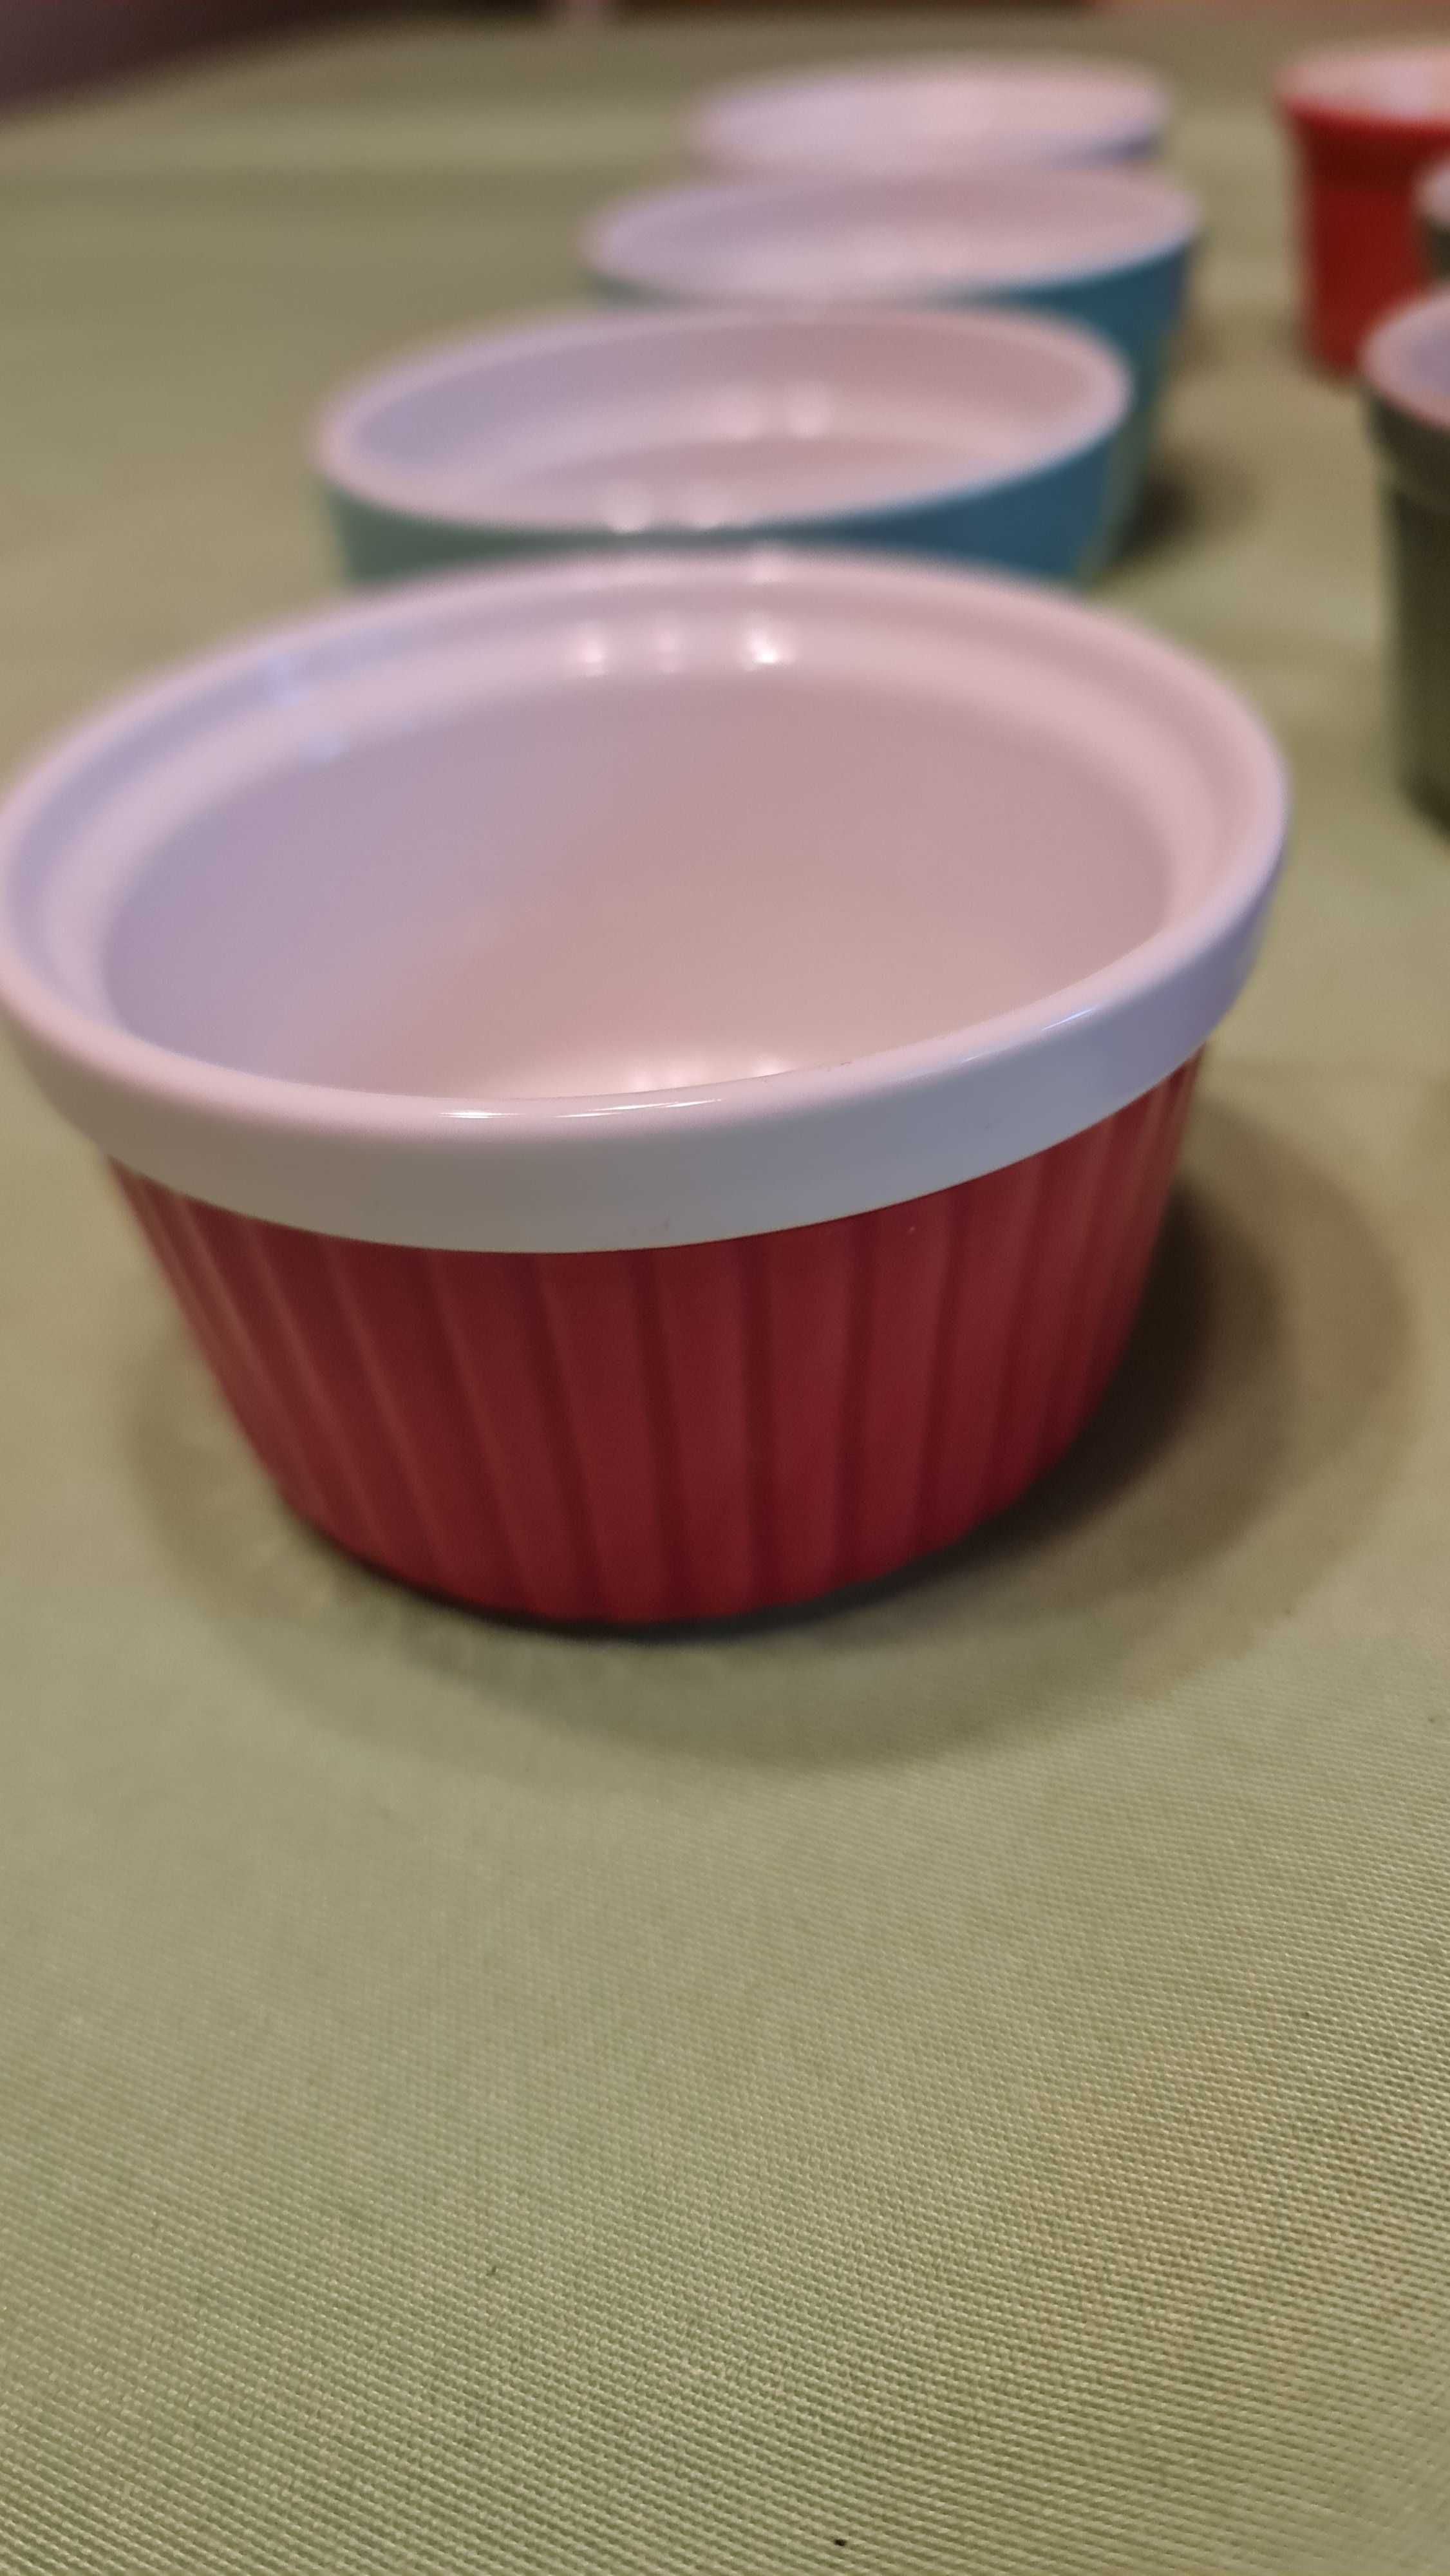 Ceramiczna kokilka do zapiekania w piekarniku